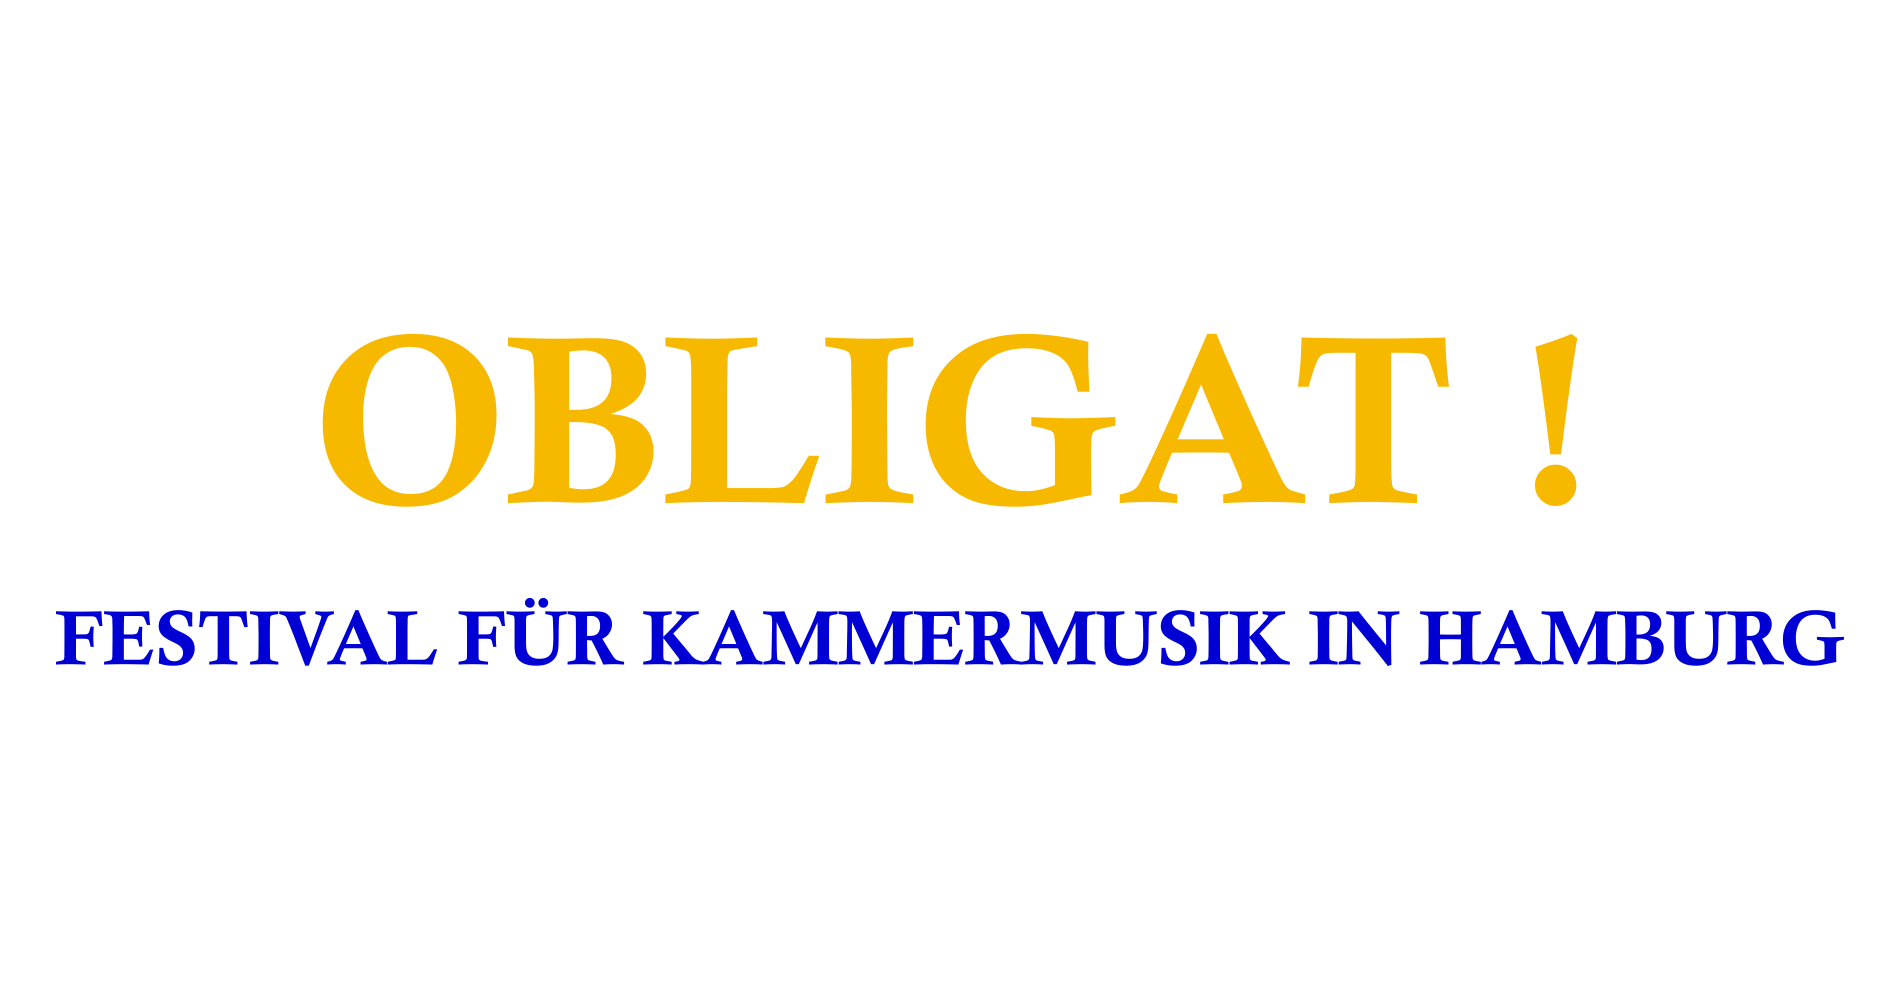 Obligat! | Hans-Kauffmann-Stiftung loading=